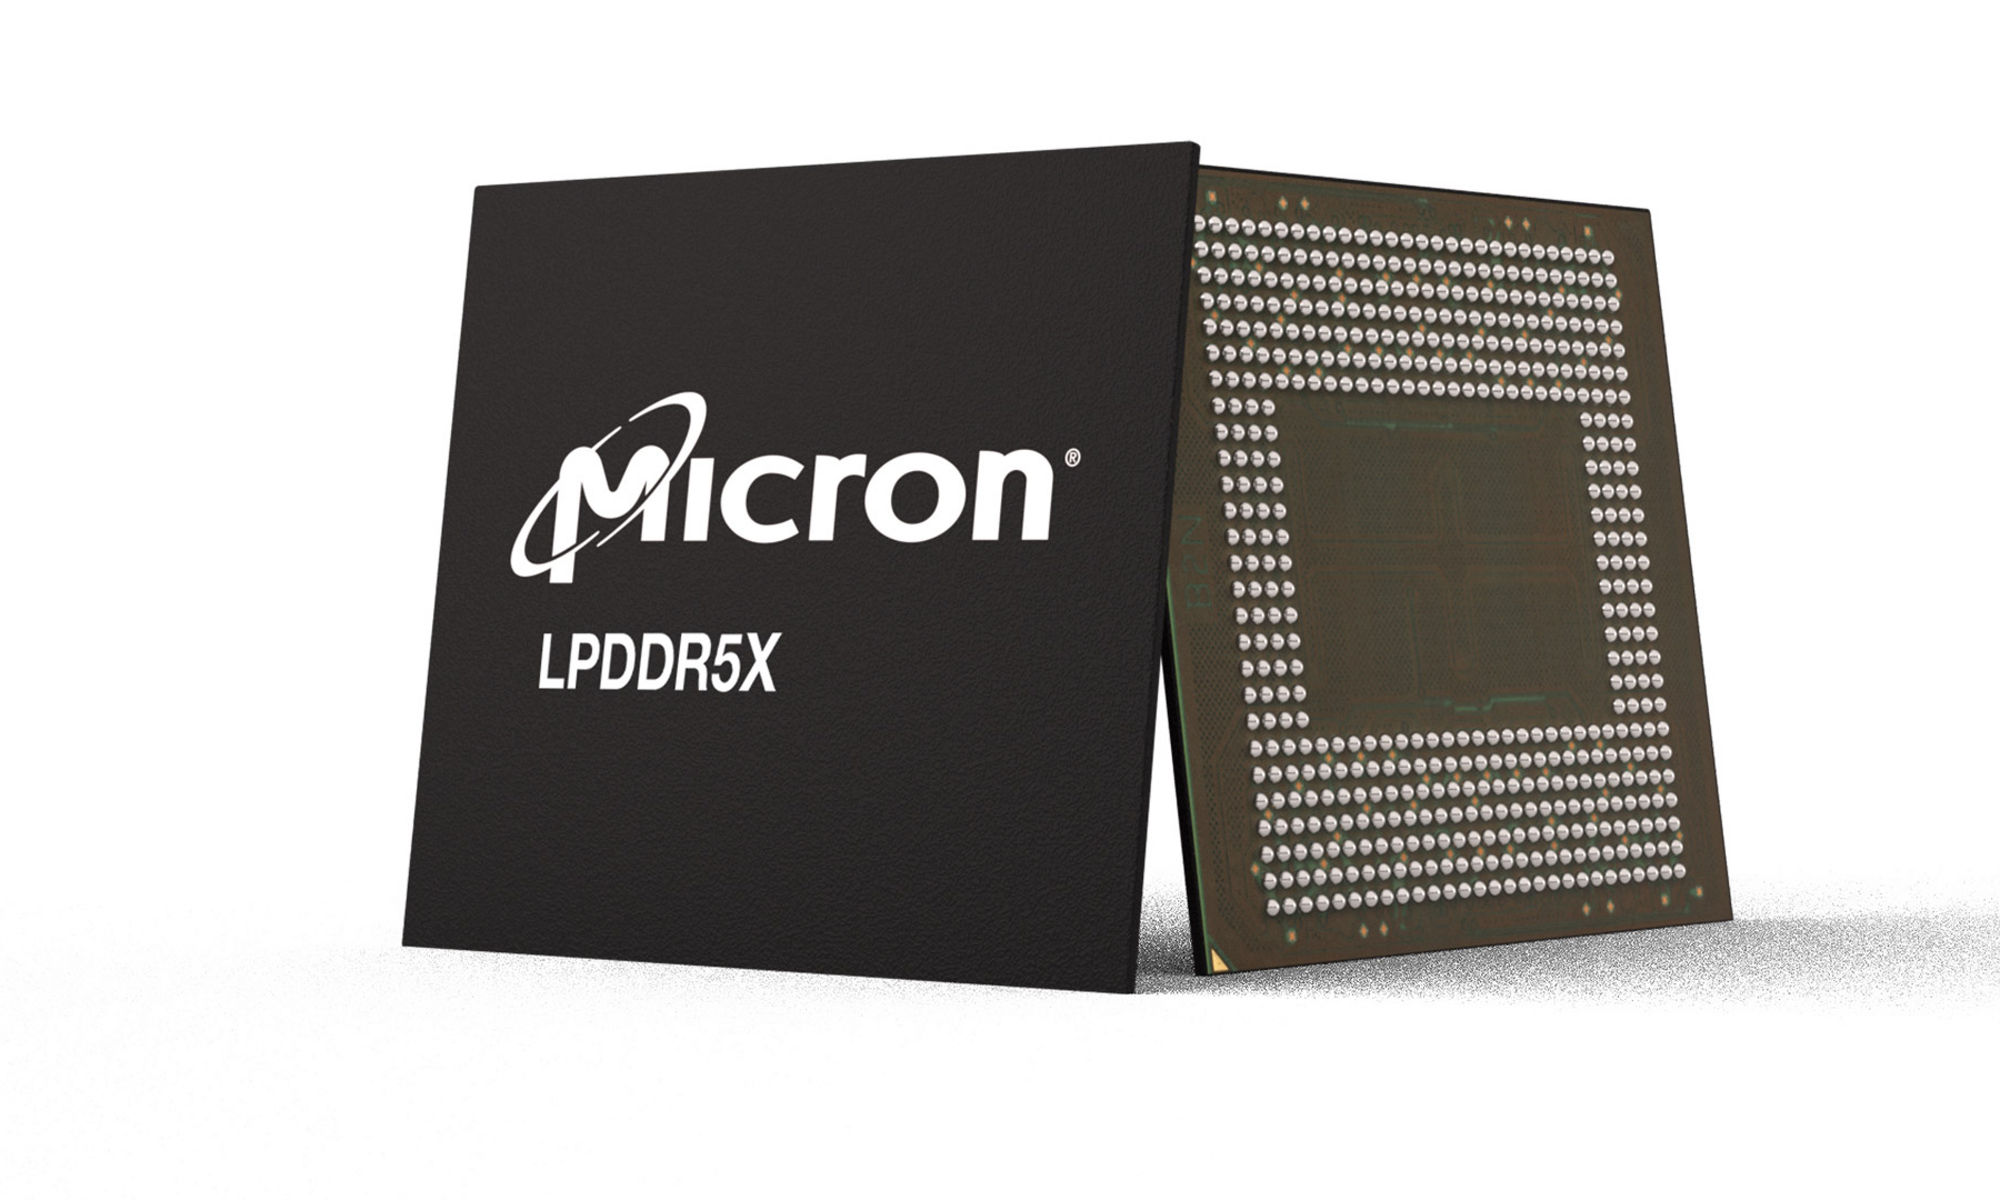 Micron LPDDR5X component module